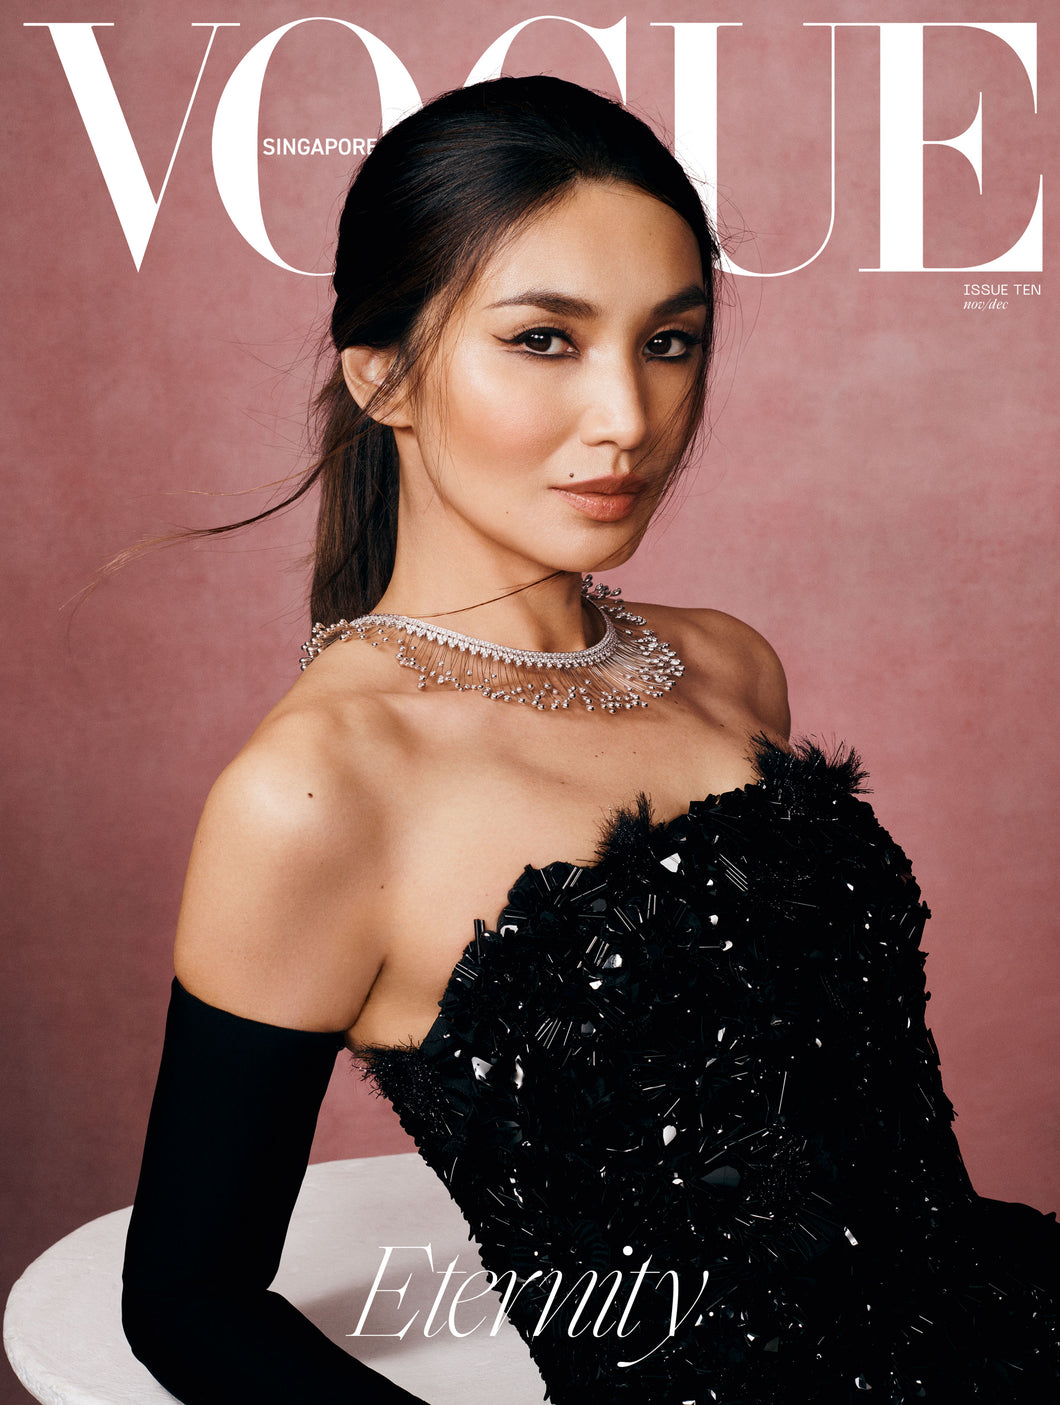 <em>Vogue</em> Singapore: Issue Ten, ETERNITY